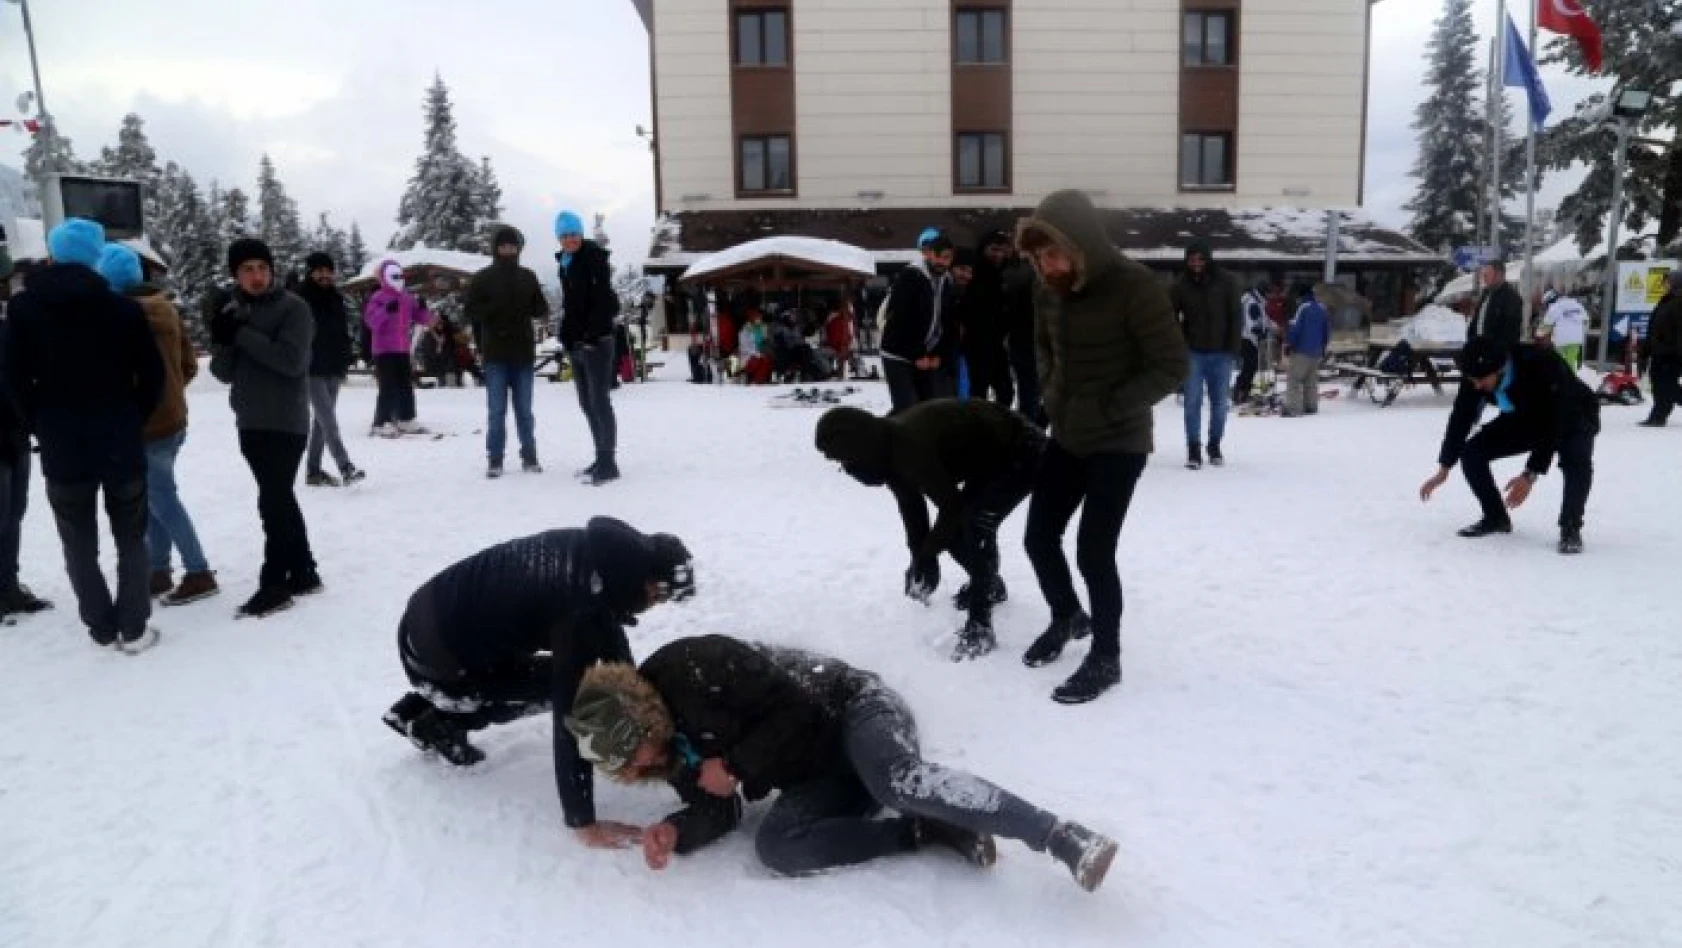 Ilgaz Dağı'nda öğrencilerin kar sevinci